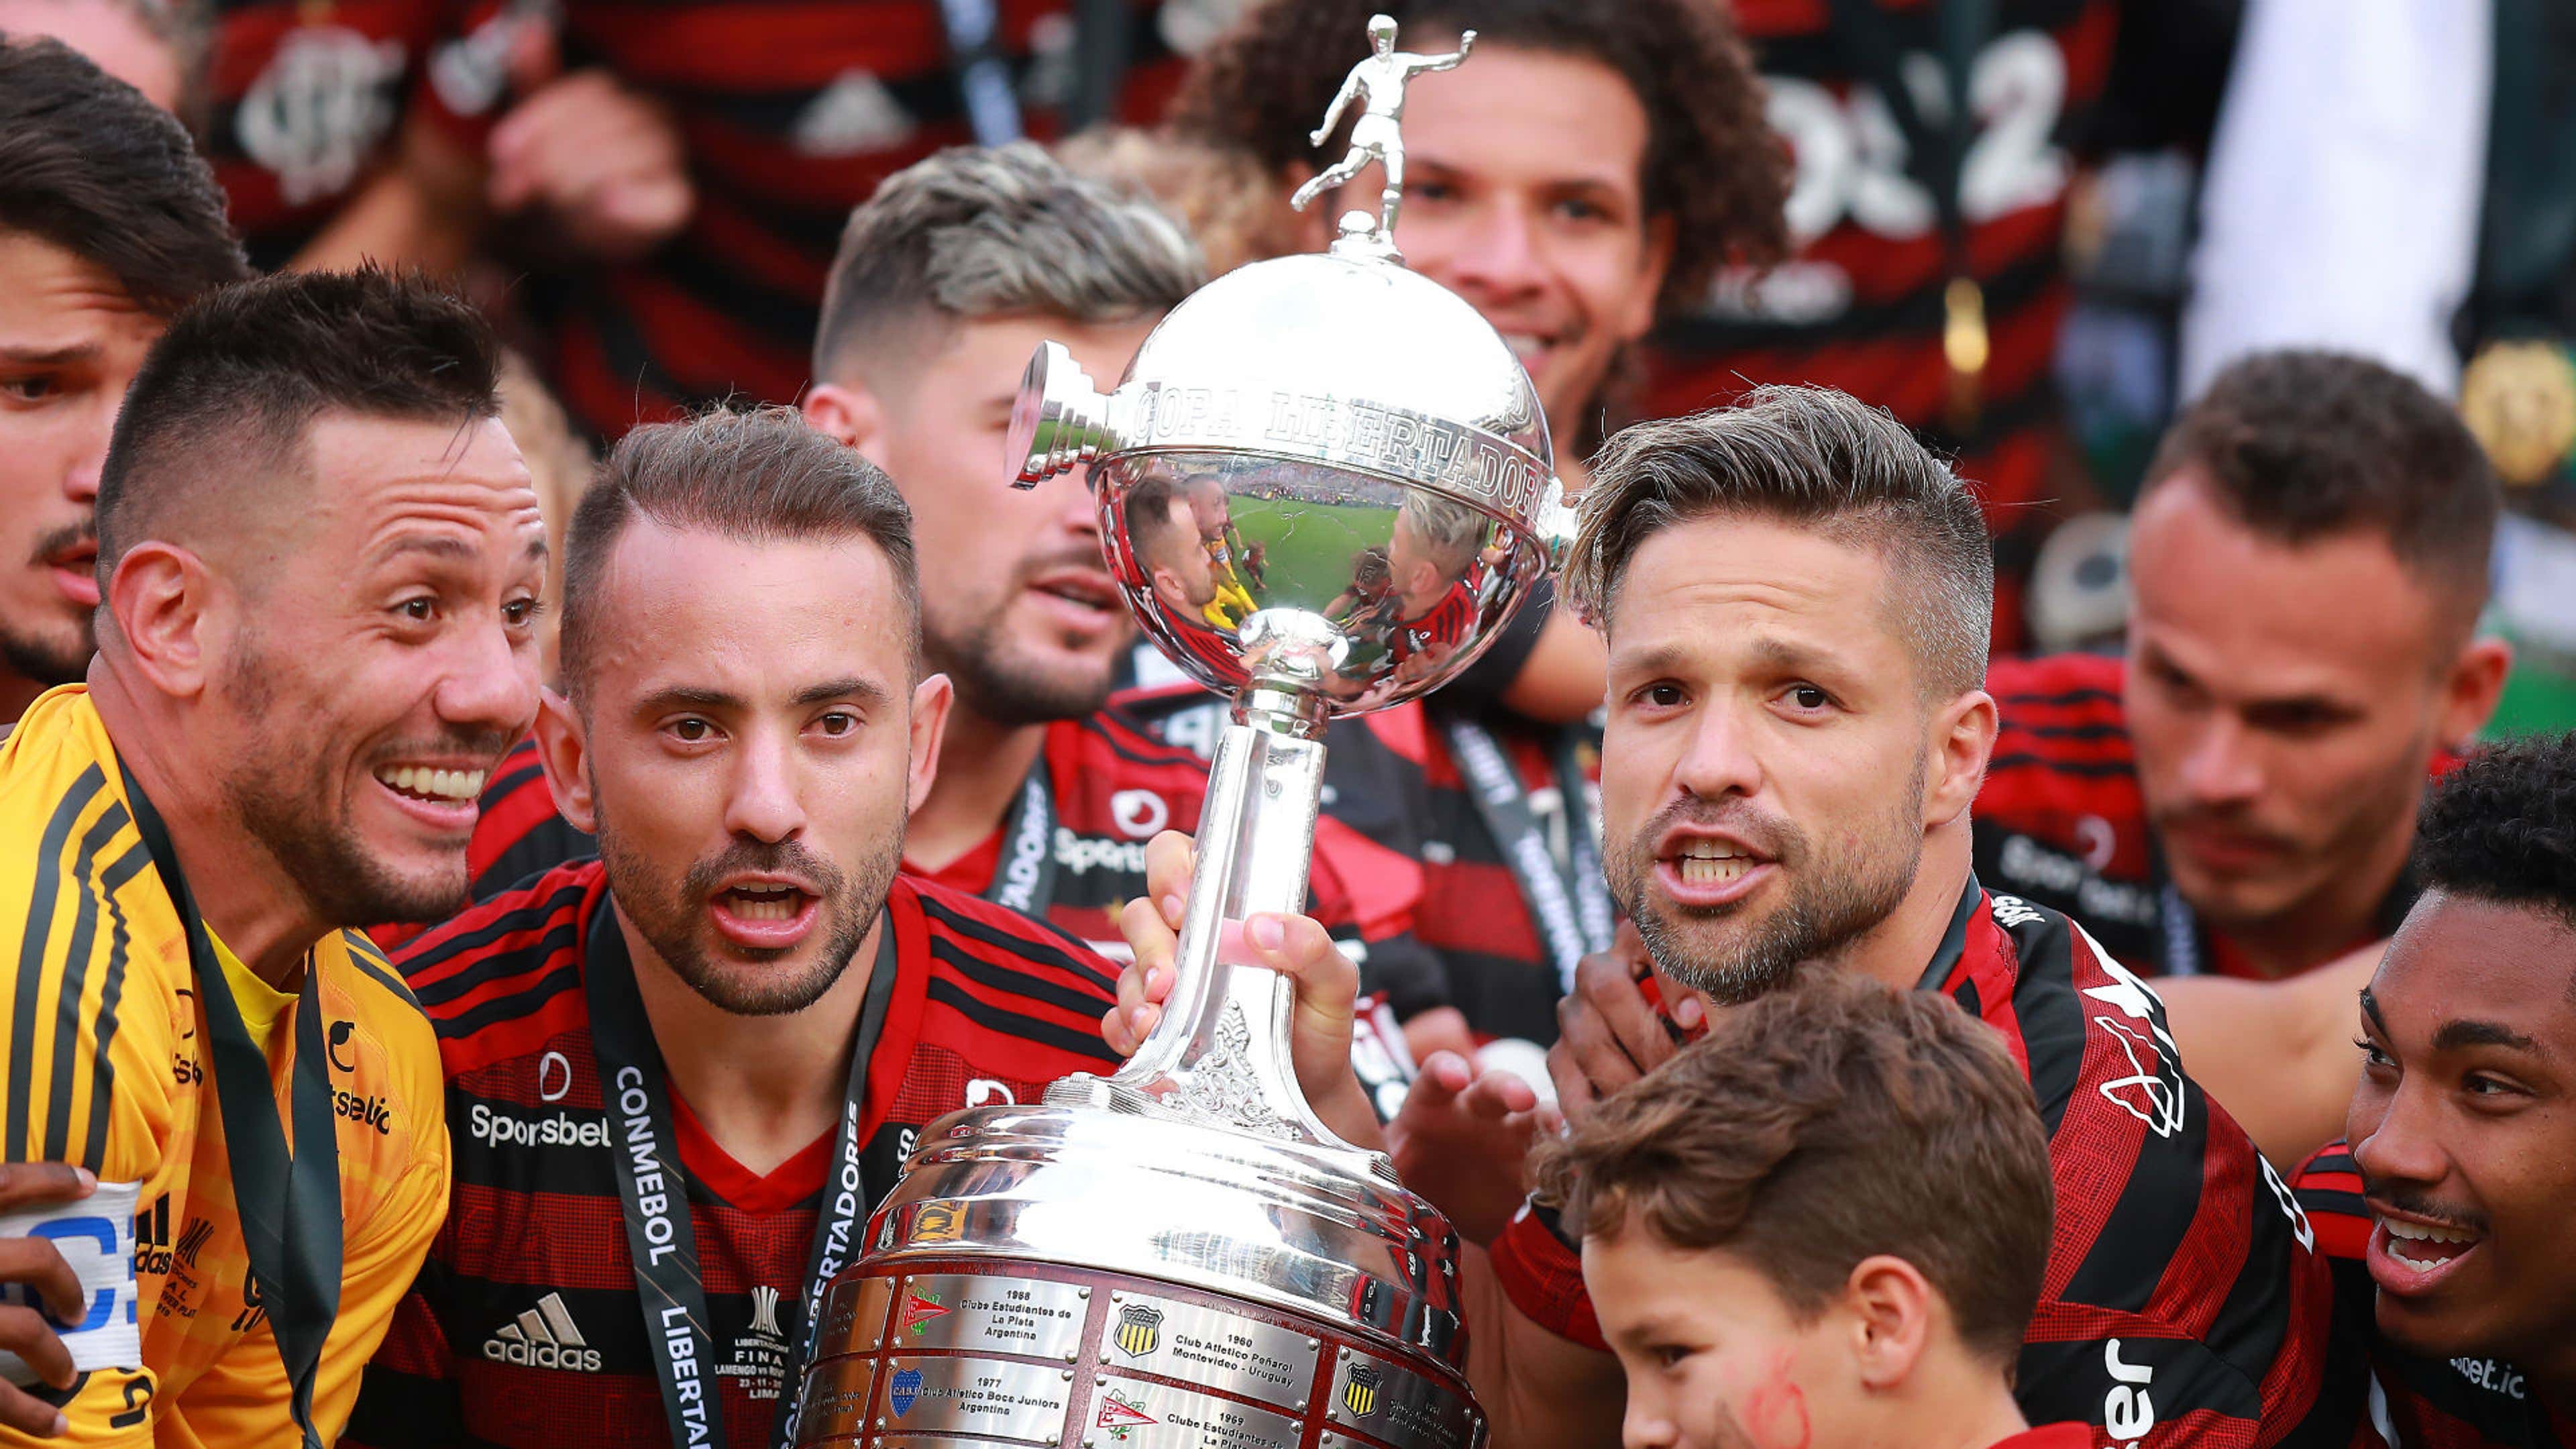 Conheça os 30 jogadores campeões da Libertadores 2019 pelo Flamengo -  Superesportes